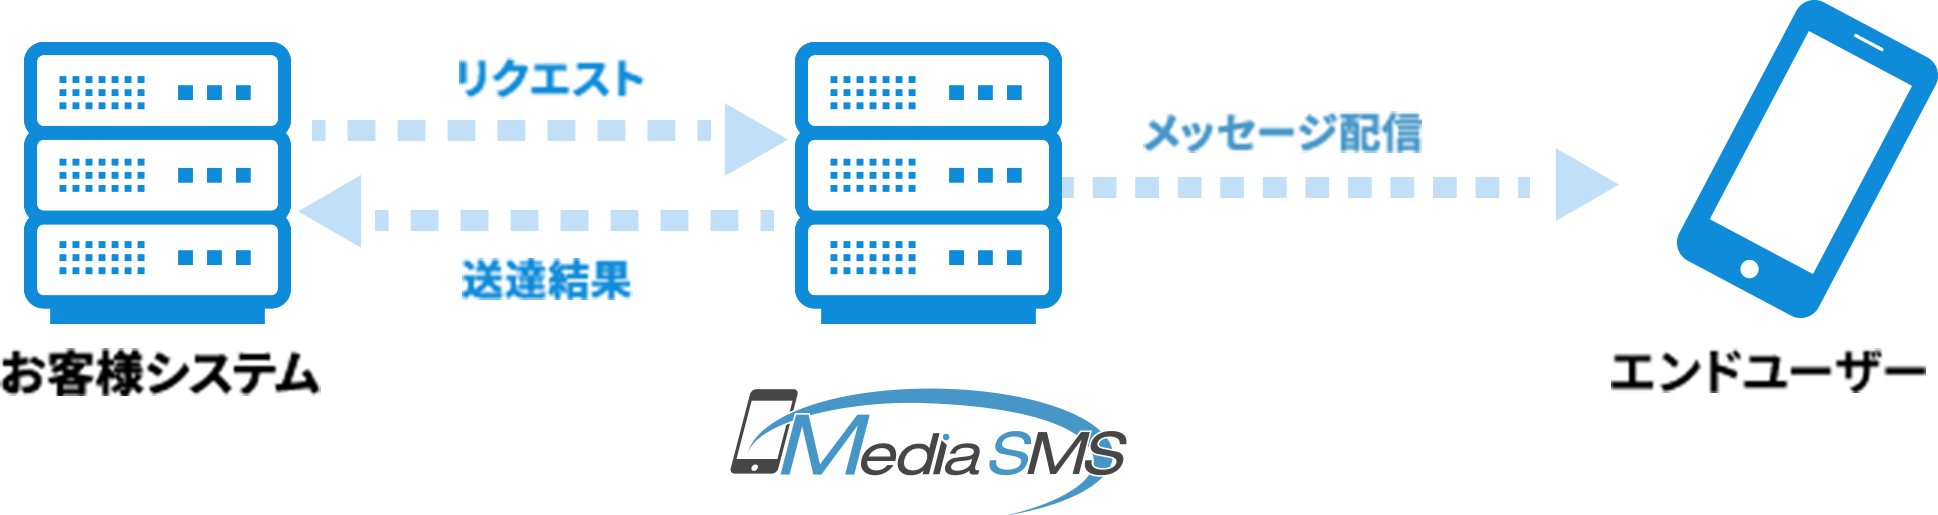 Sms送信は メディアsms Apiで貴社システム連携も可 携帯電話番号認証 本人認証 ニーズにもしっかり対応 Media Sms ランディングページ